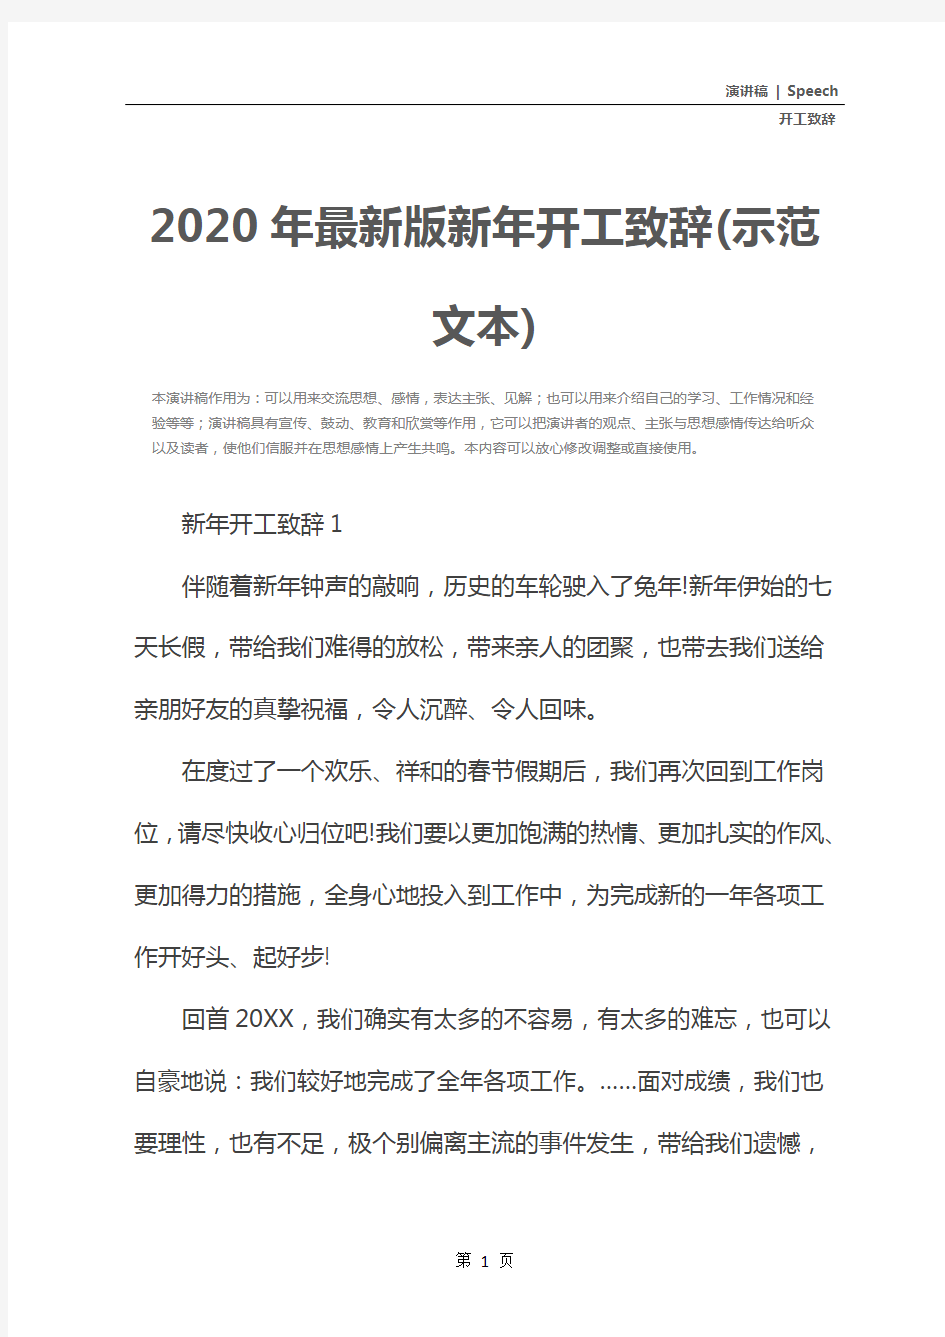 2020年最新版新年开工致辞(示范文本)